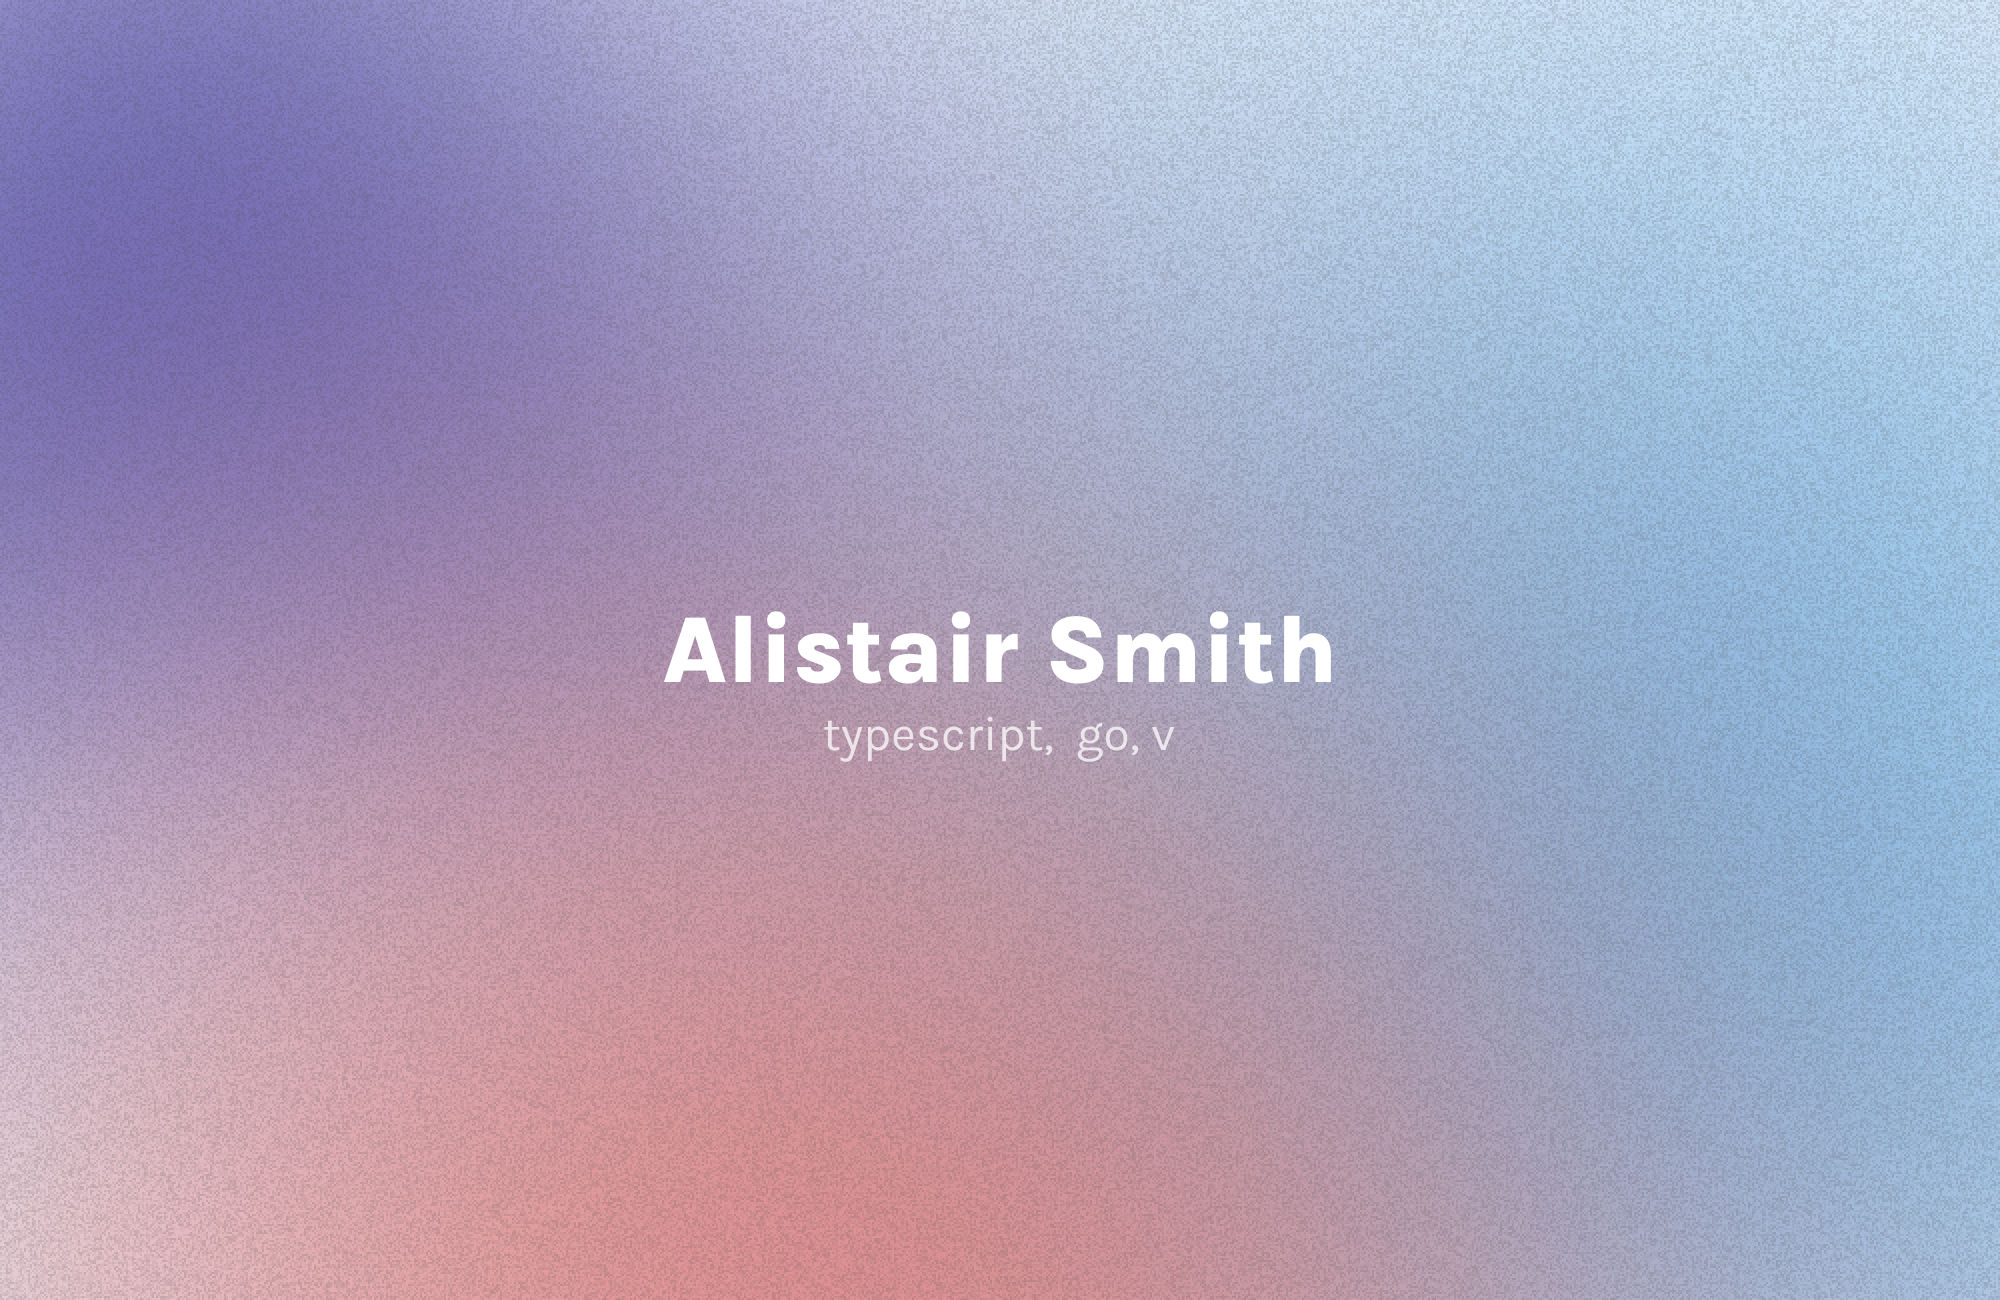 Alistair Smith